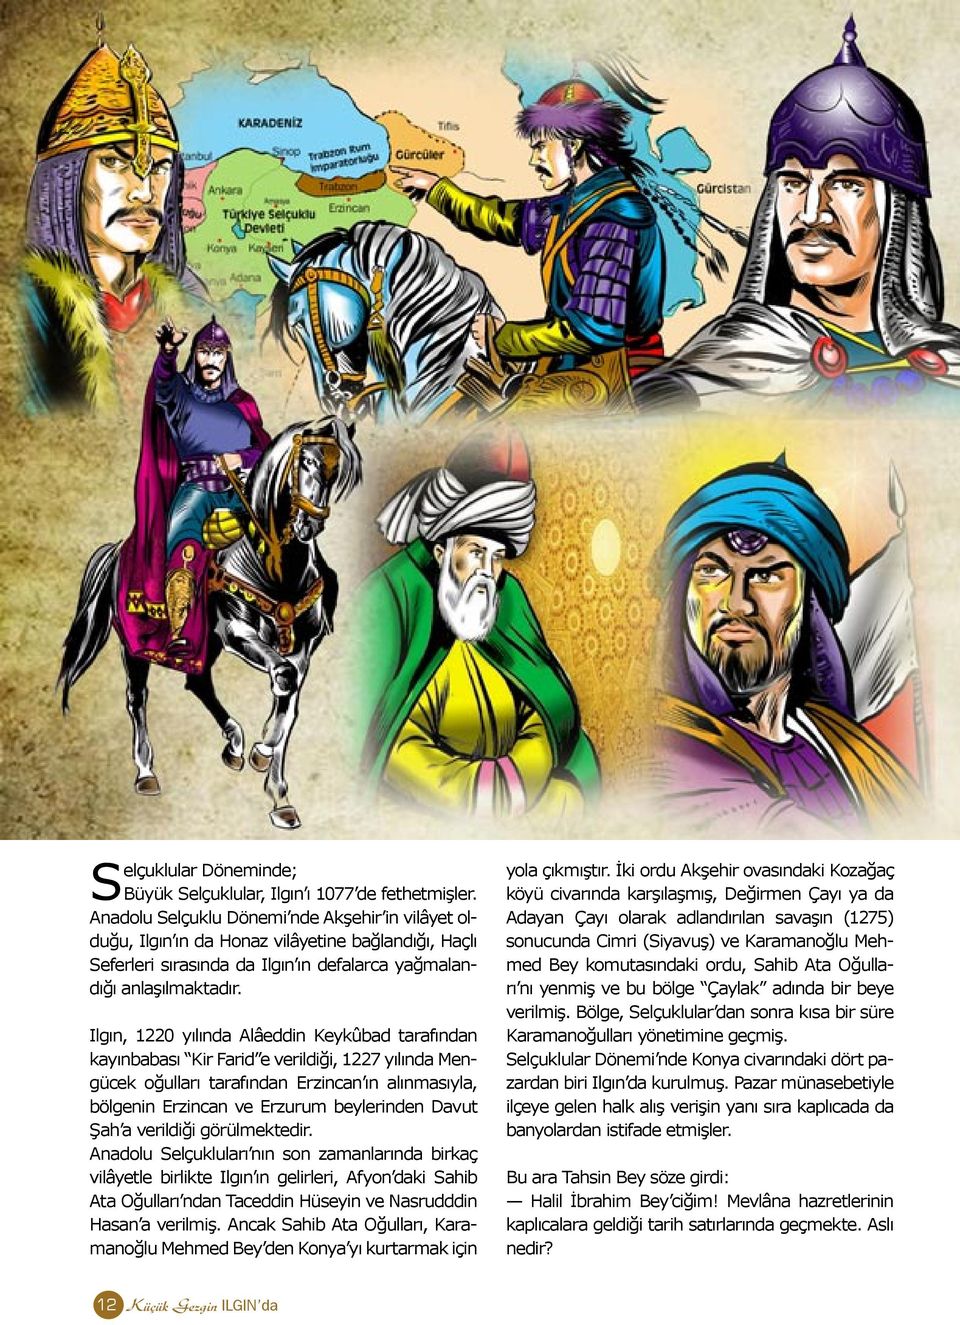 Ilgın, 1220 yılında Alâeddin Keykûbad tarafından kayınbabası Kir Farid e verildiği, 1227 yılında Mengücek oğulları tarafından Erzincan ın alınmasıyla, bölgenin Erzincan ve Erzurum beylerinden Davut